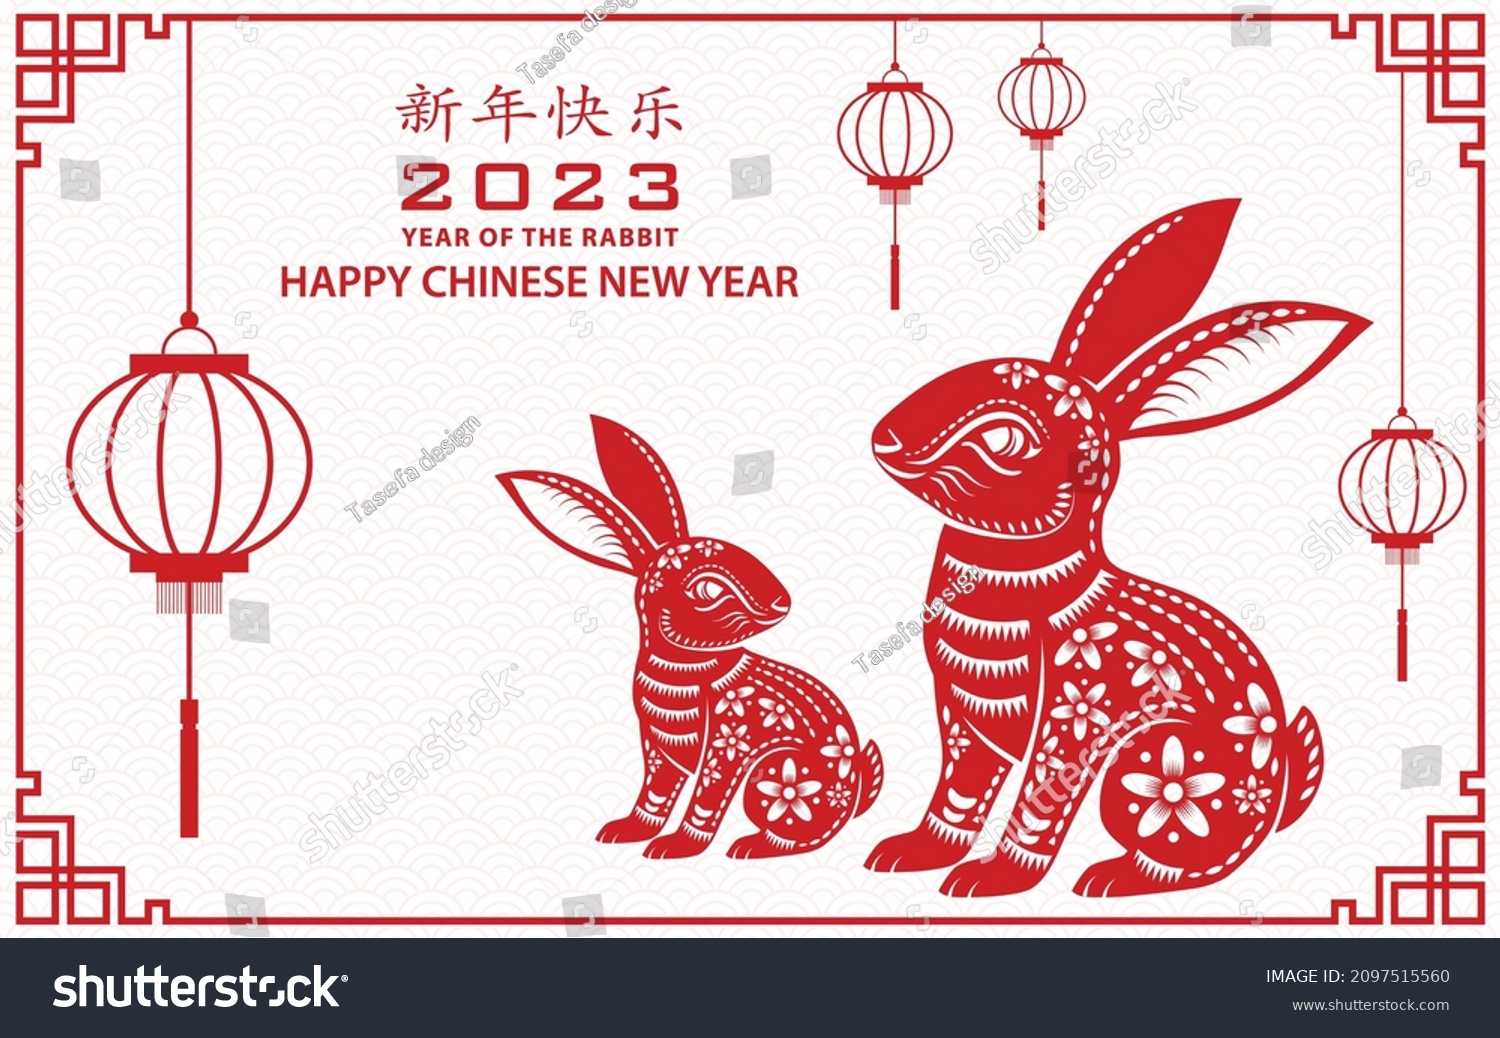 Картинка Китайский гороскоп на 2023 год - год Кролика.